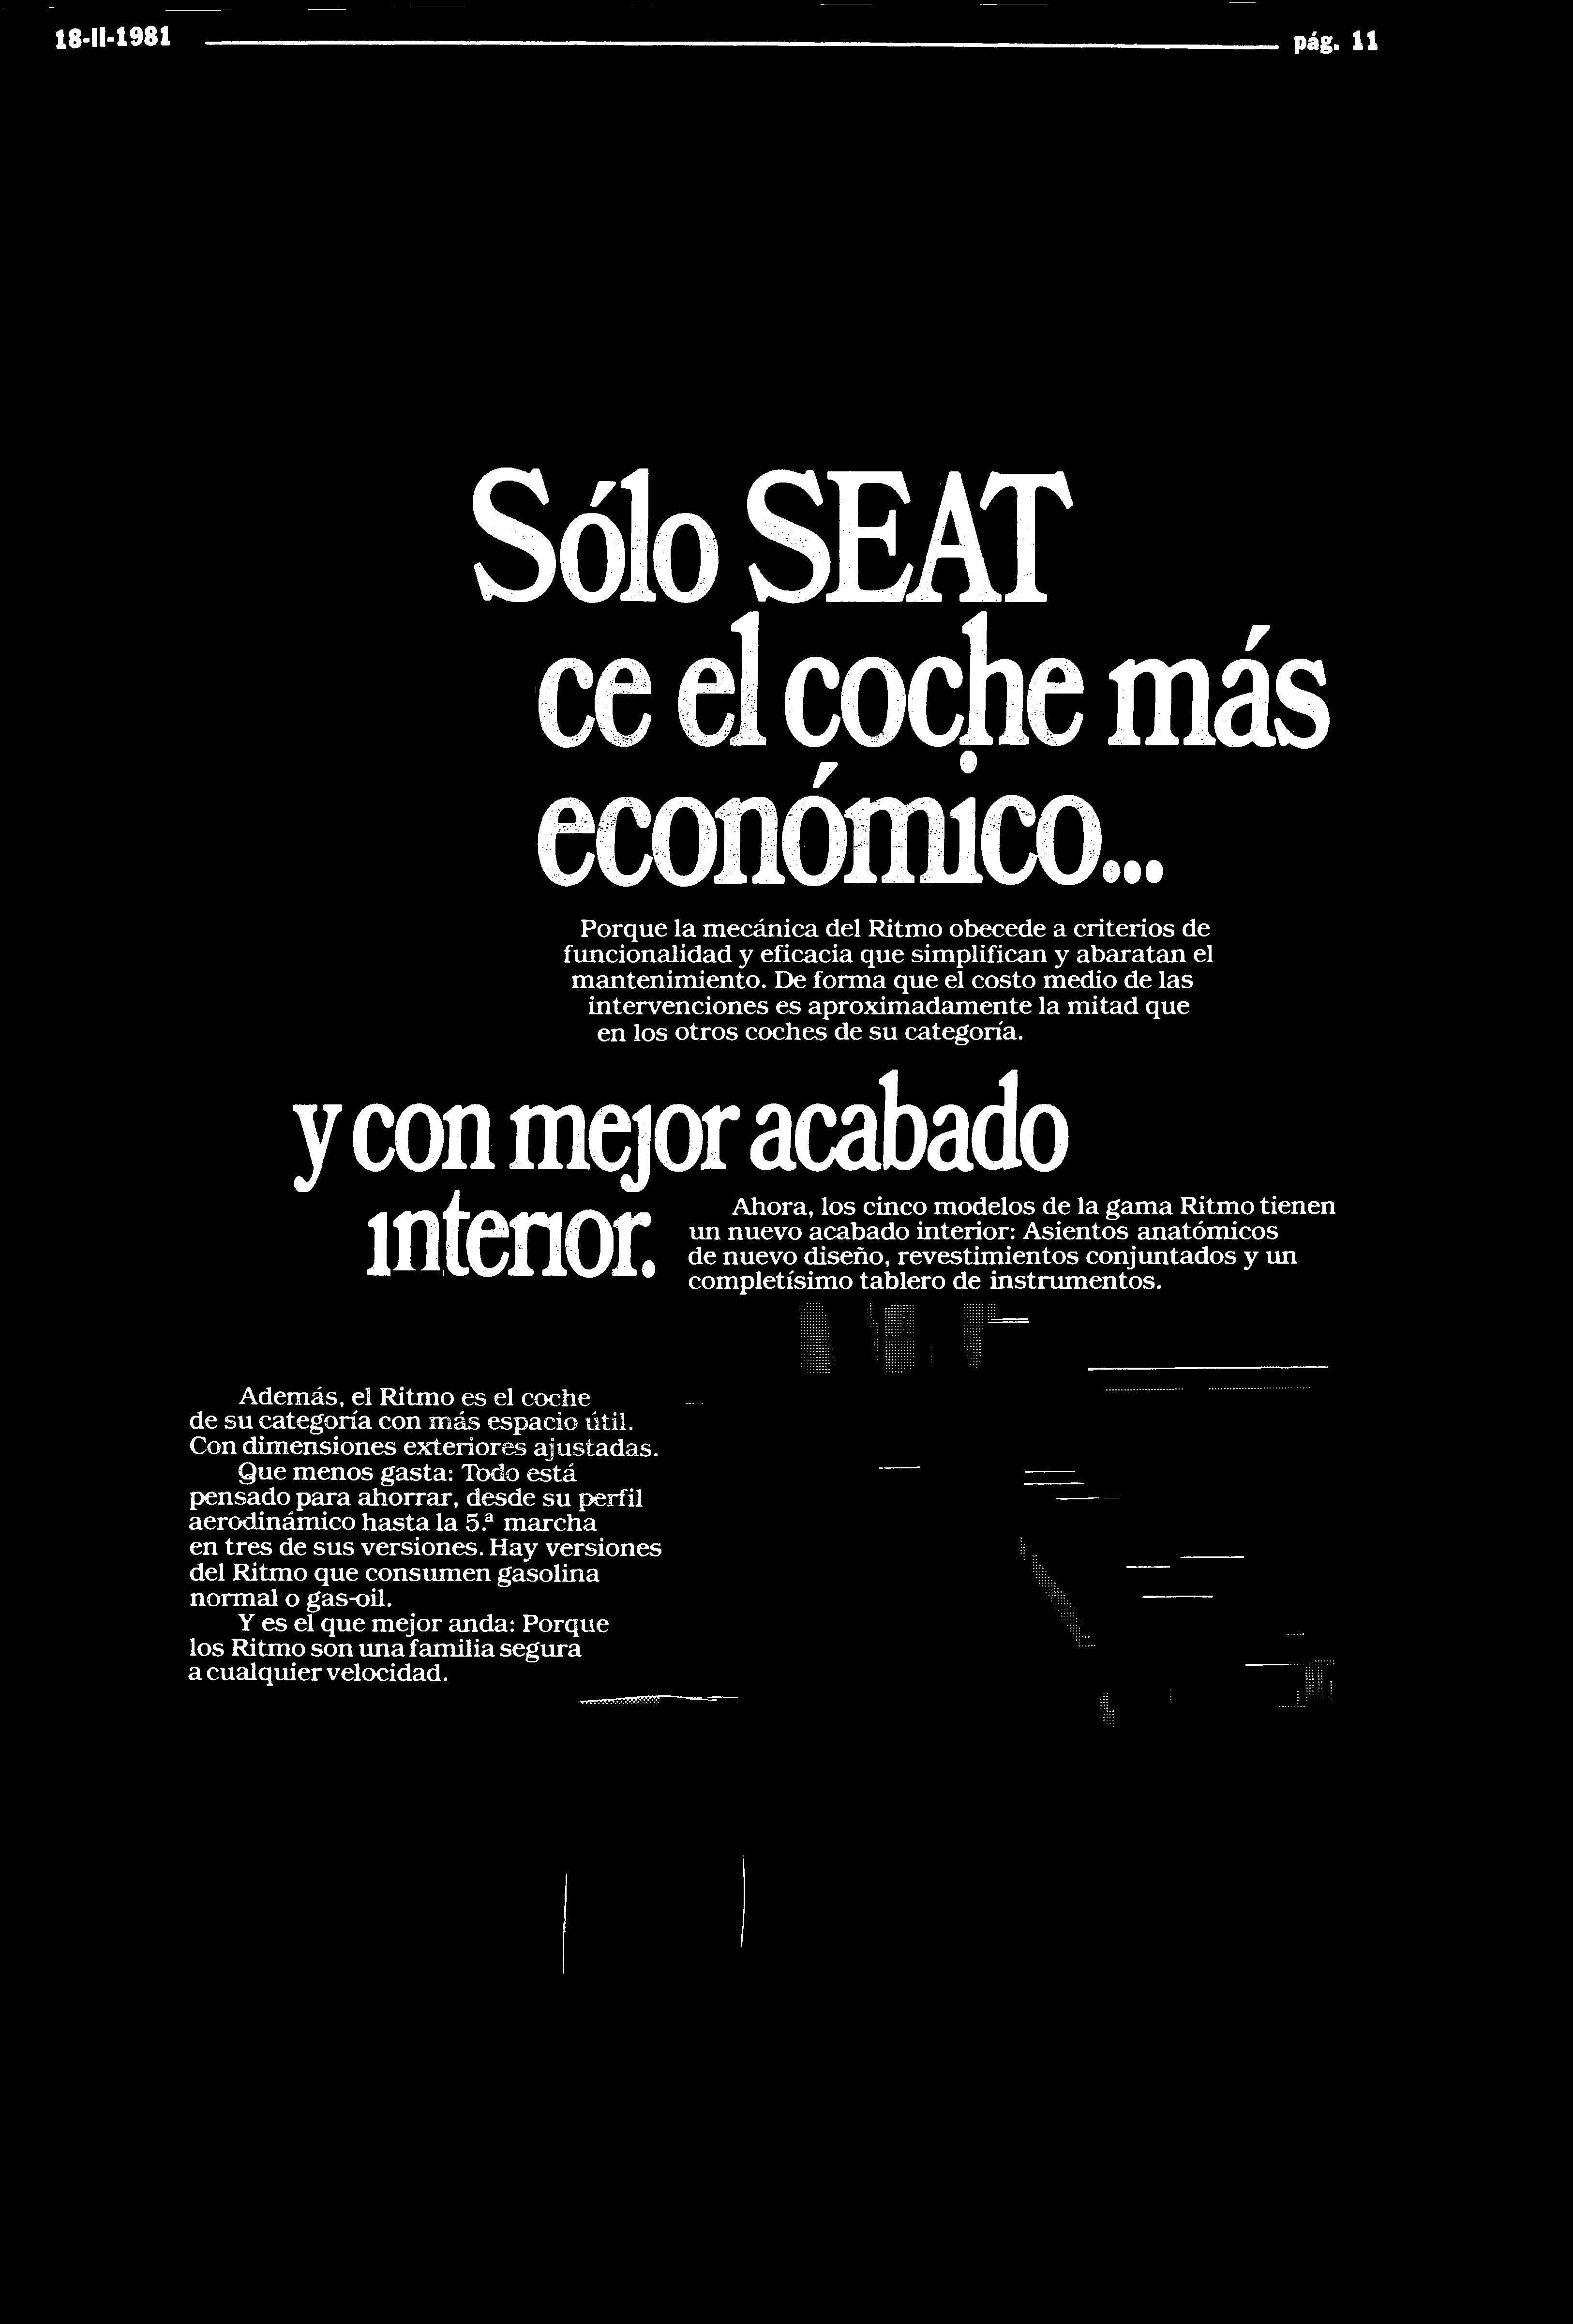 18-11-1981 pág. 11 Sólo SEAT ce el coche más económico Porque la mecánica del Ritmo obecede a criterios de funcionalidad y eficacia que simplifican y abaratan el mantenimiento.